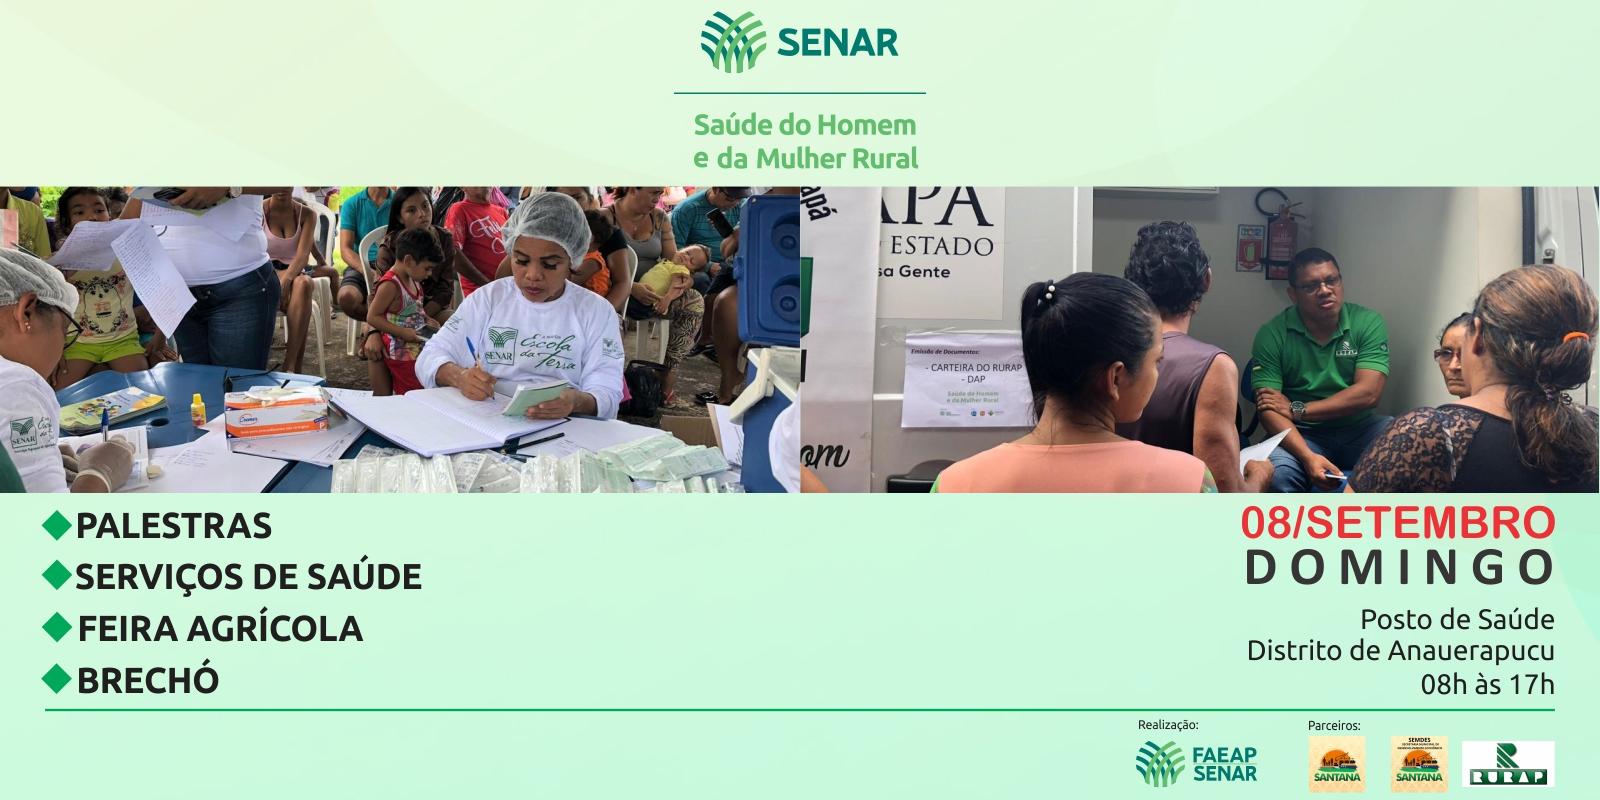 Segunda edição do Programa Saúde do Homem e da Mulher Rural acontece nesse domingo no Distrito de Anauerapucu, em Santana